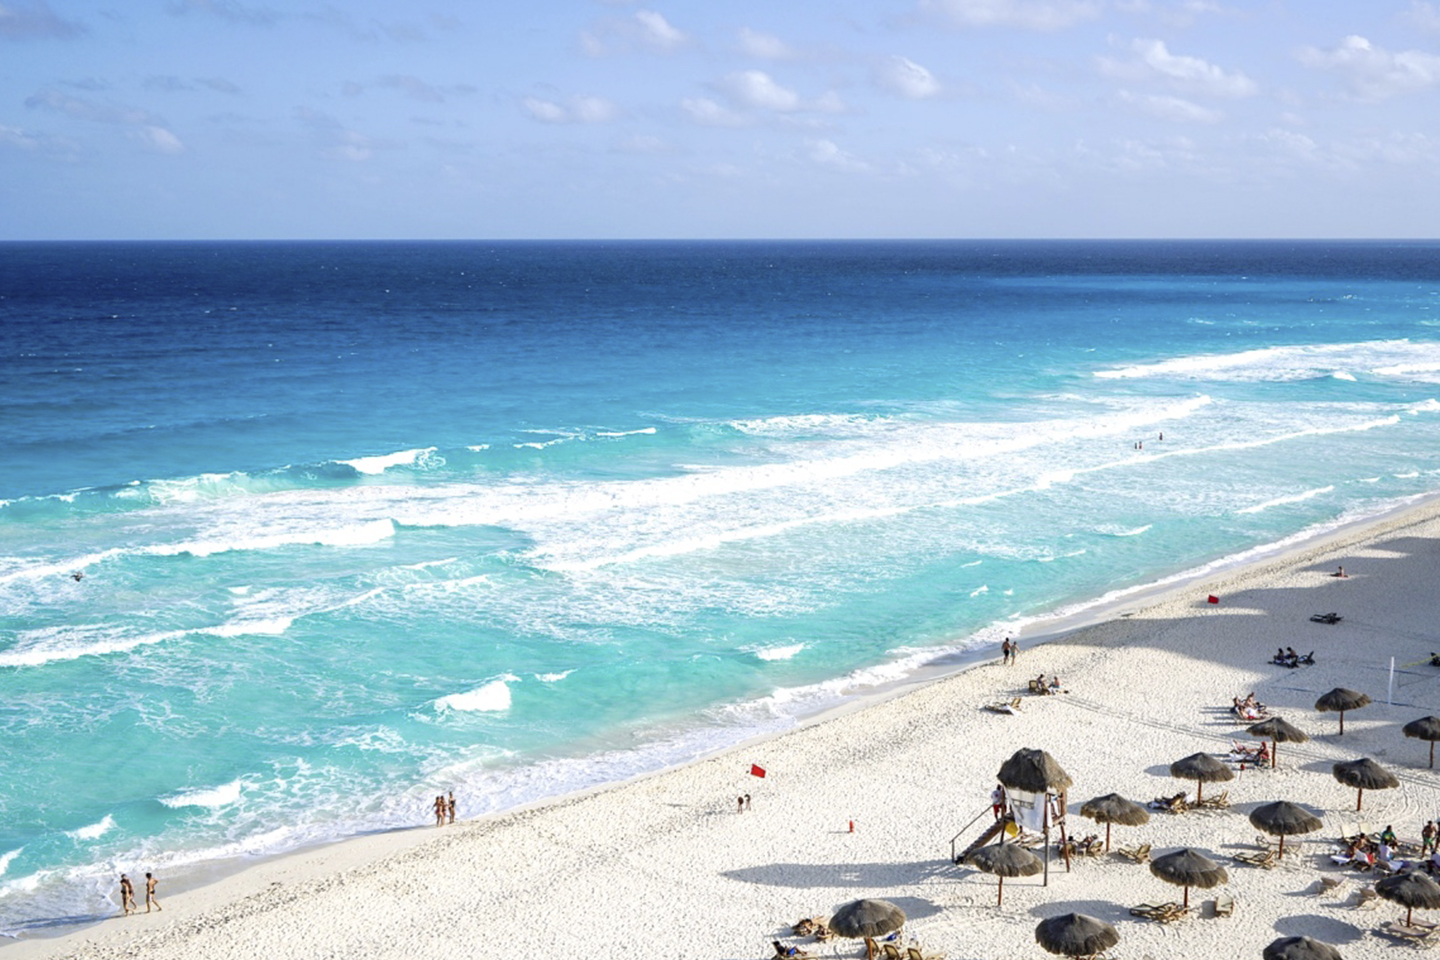 Playa Delfines, Cancún: todo lo que ocupas saber